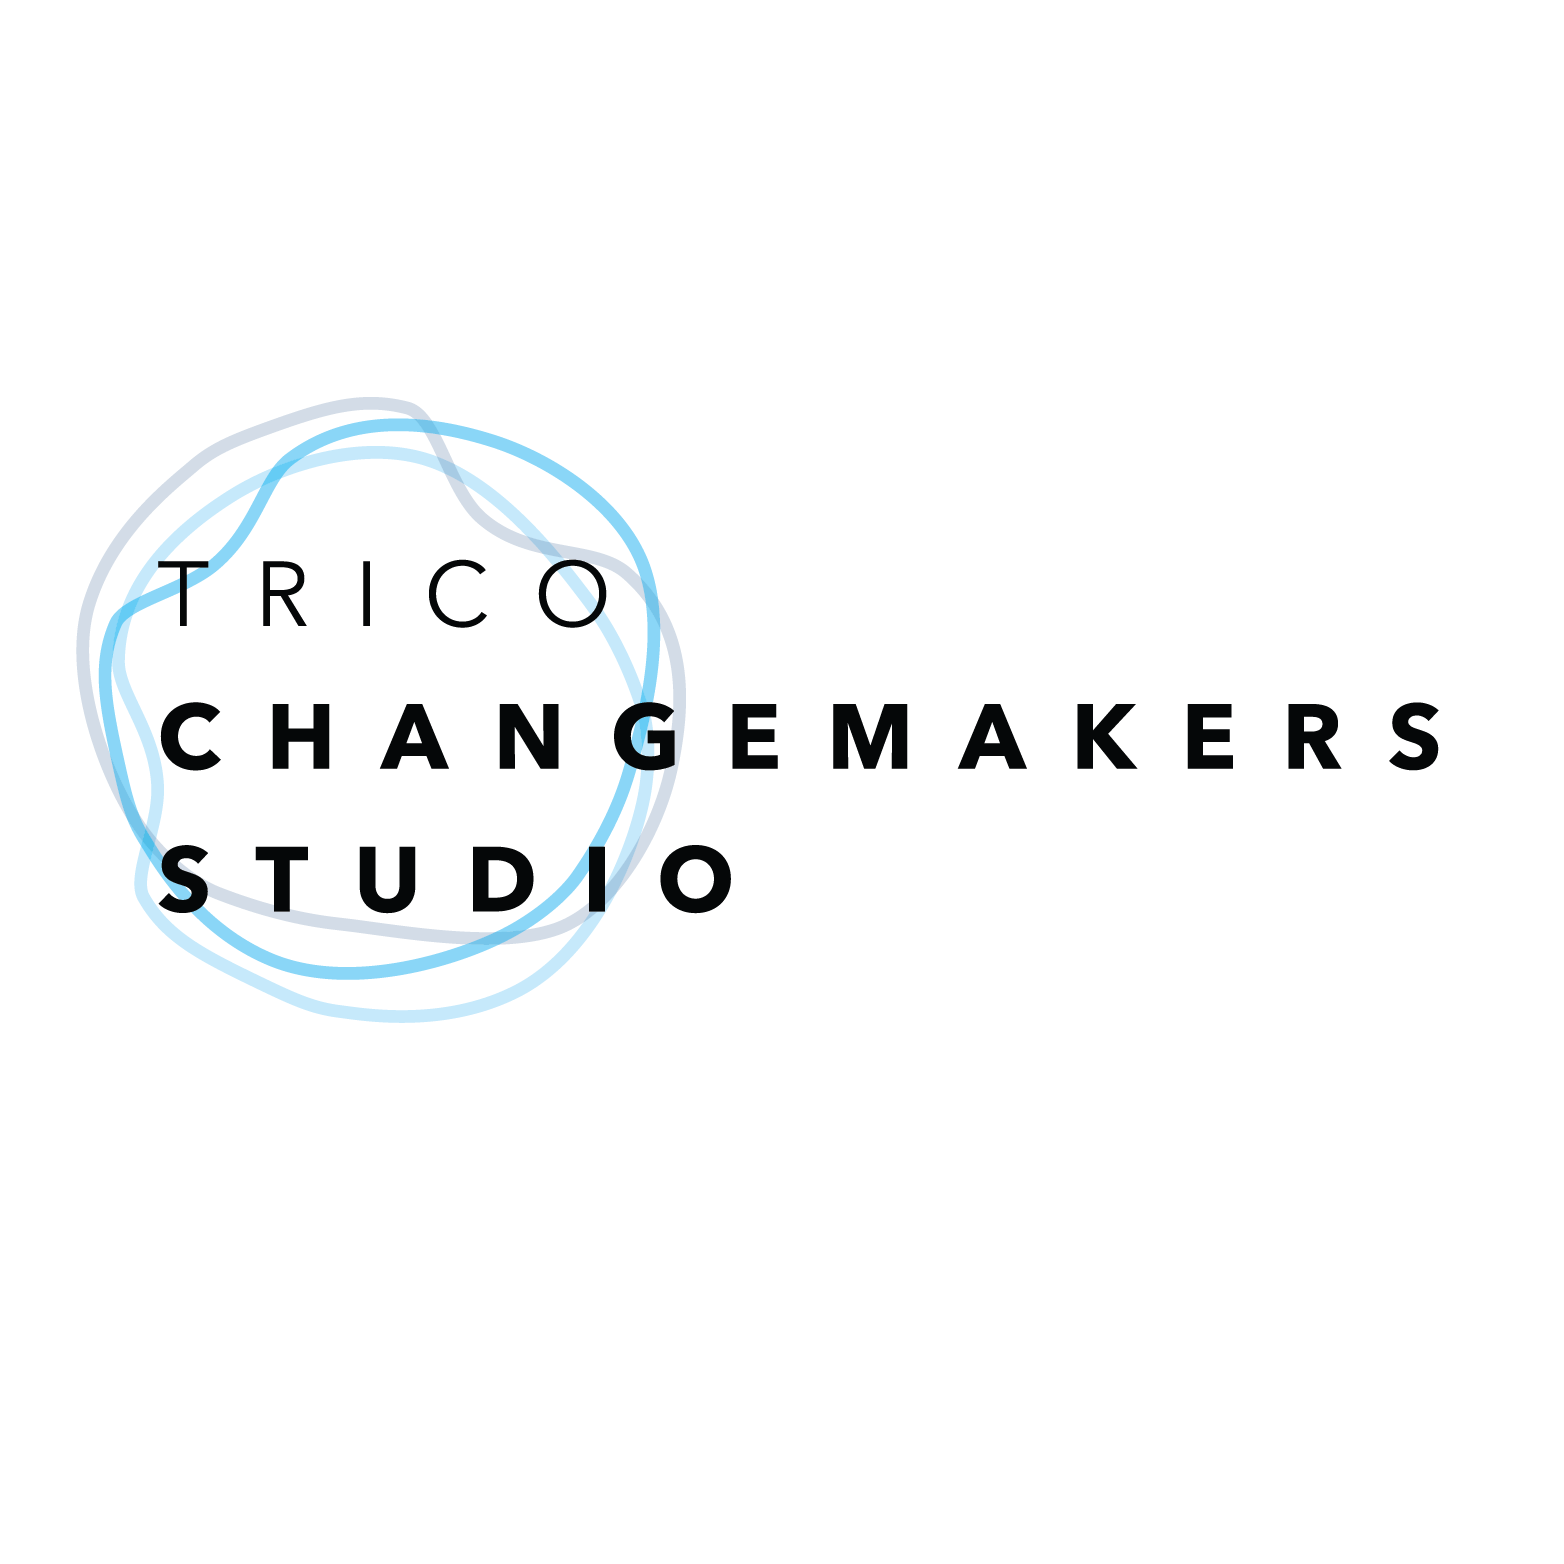 Trico Changemakers Studio